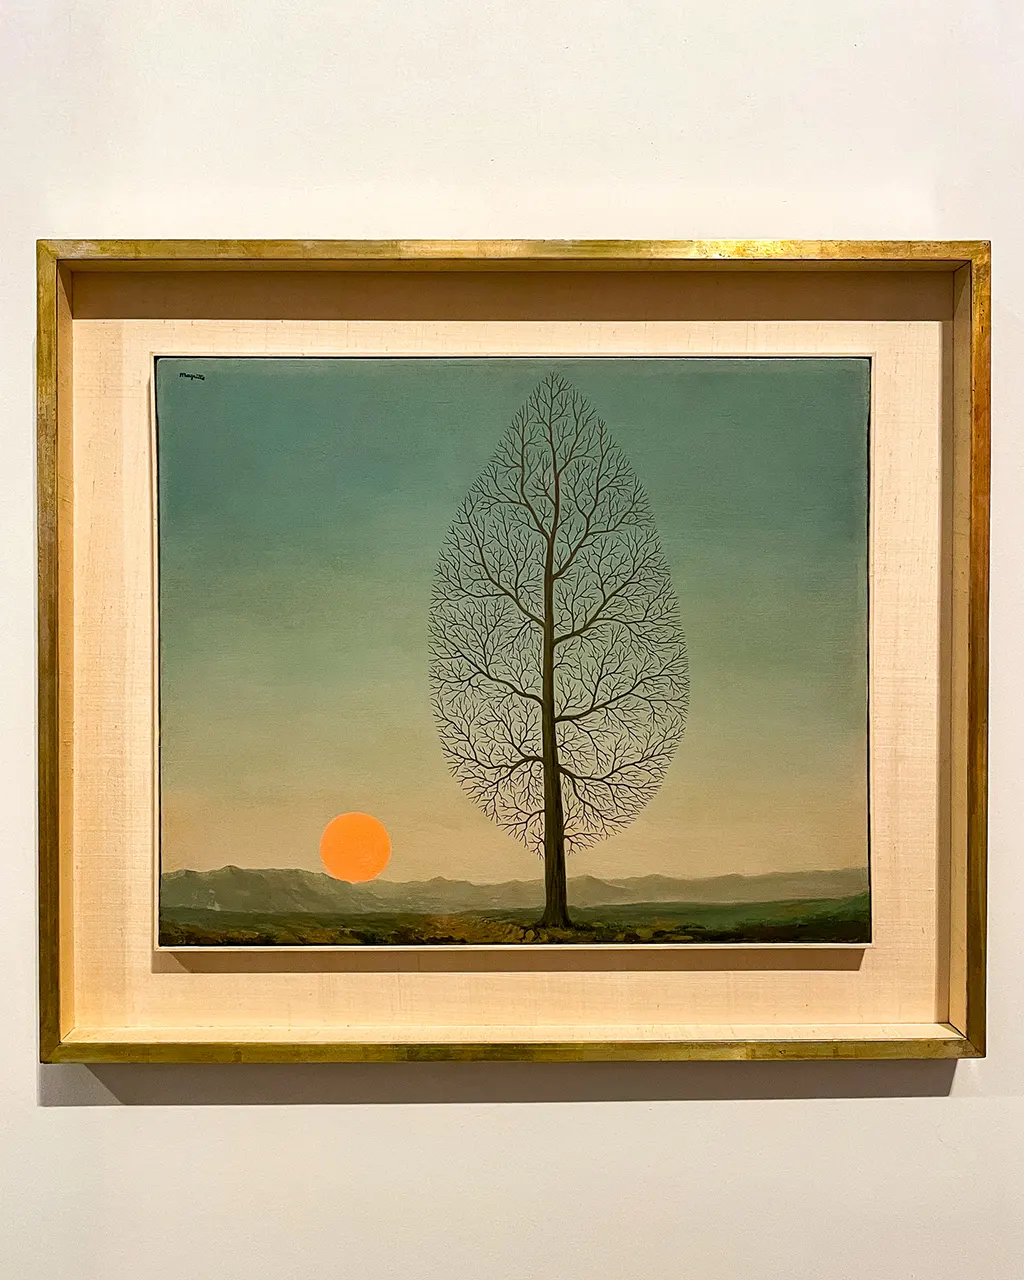 Oeuvre originale de René Magritte à Liège